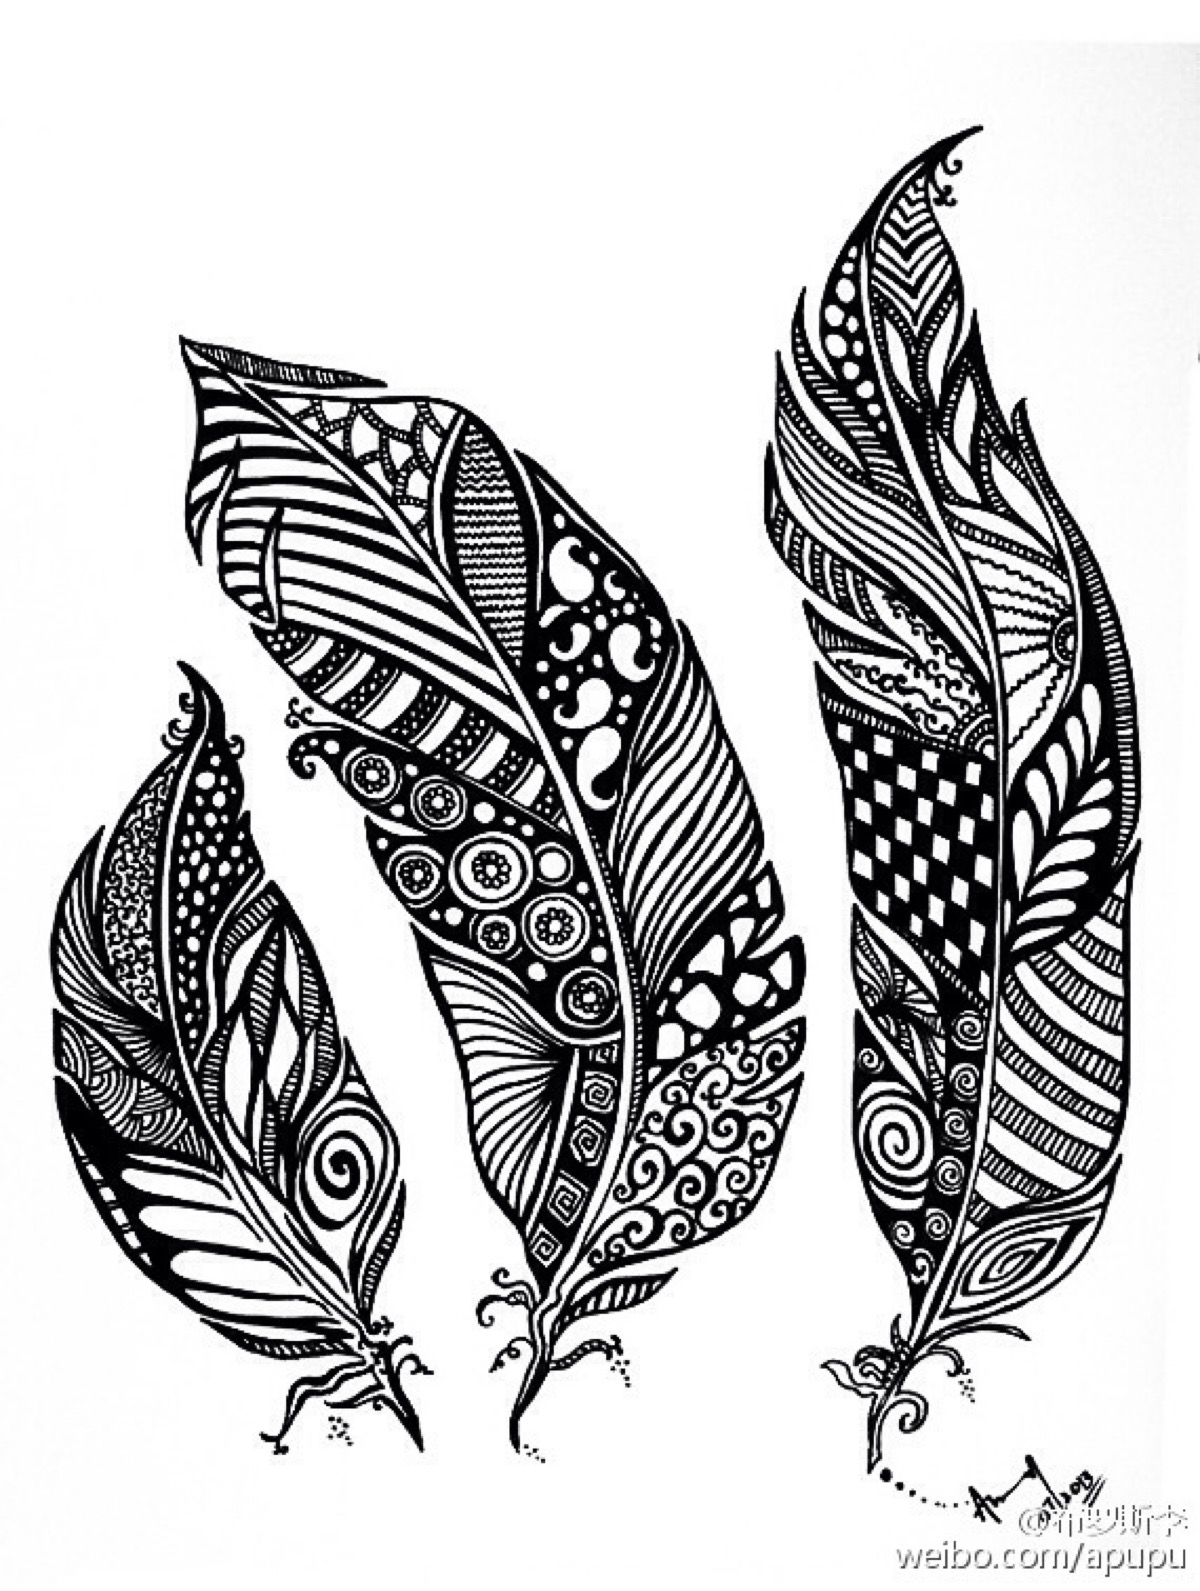 羽毛纹身手稿黑白图片